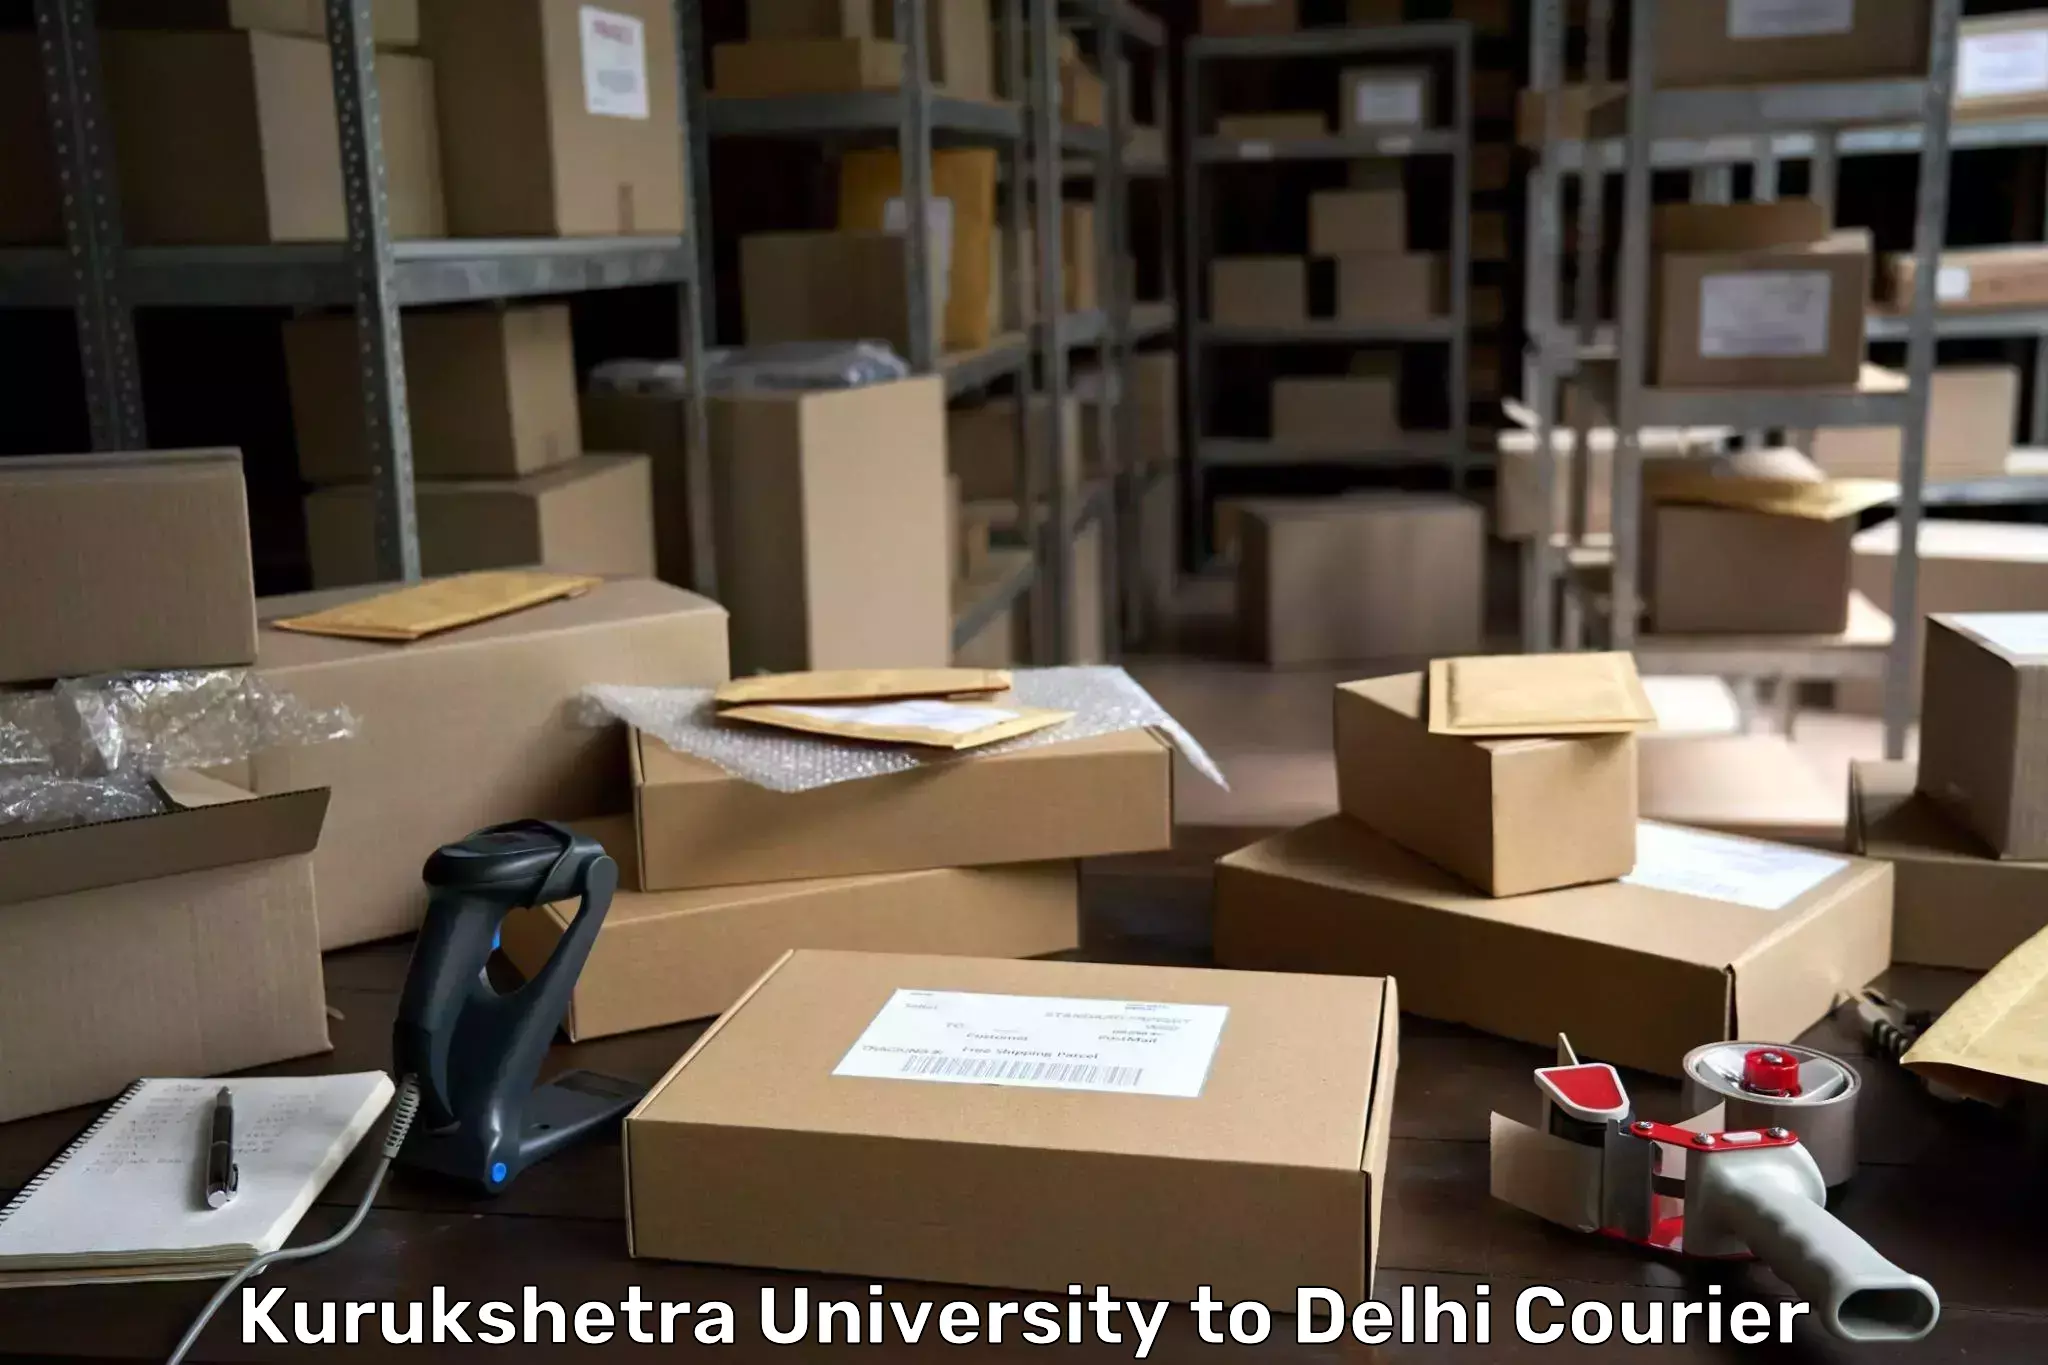 Reliable parcel services Kurukshetra University to Ashok Vihar